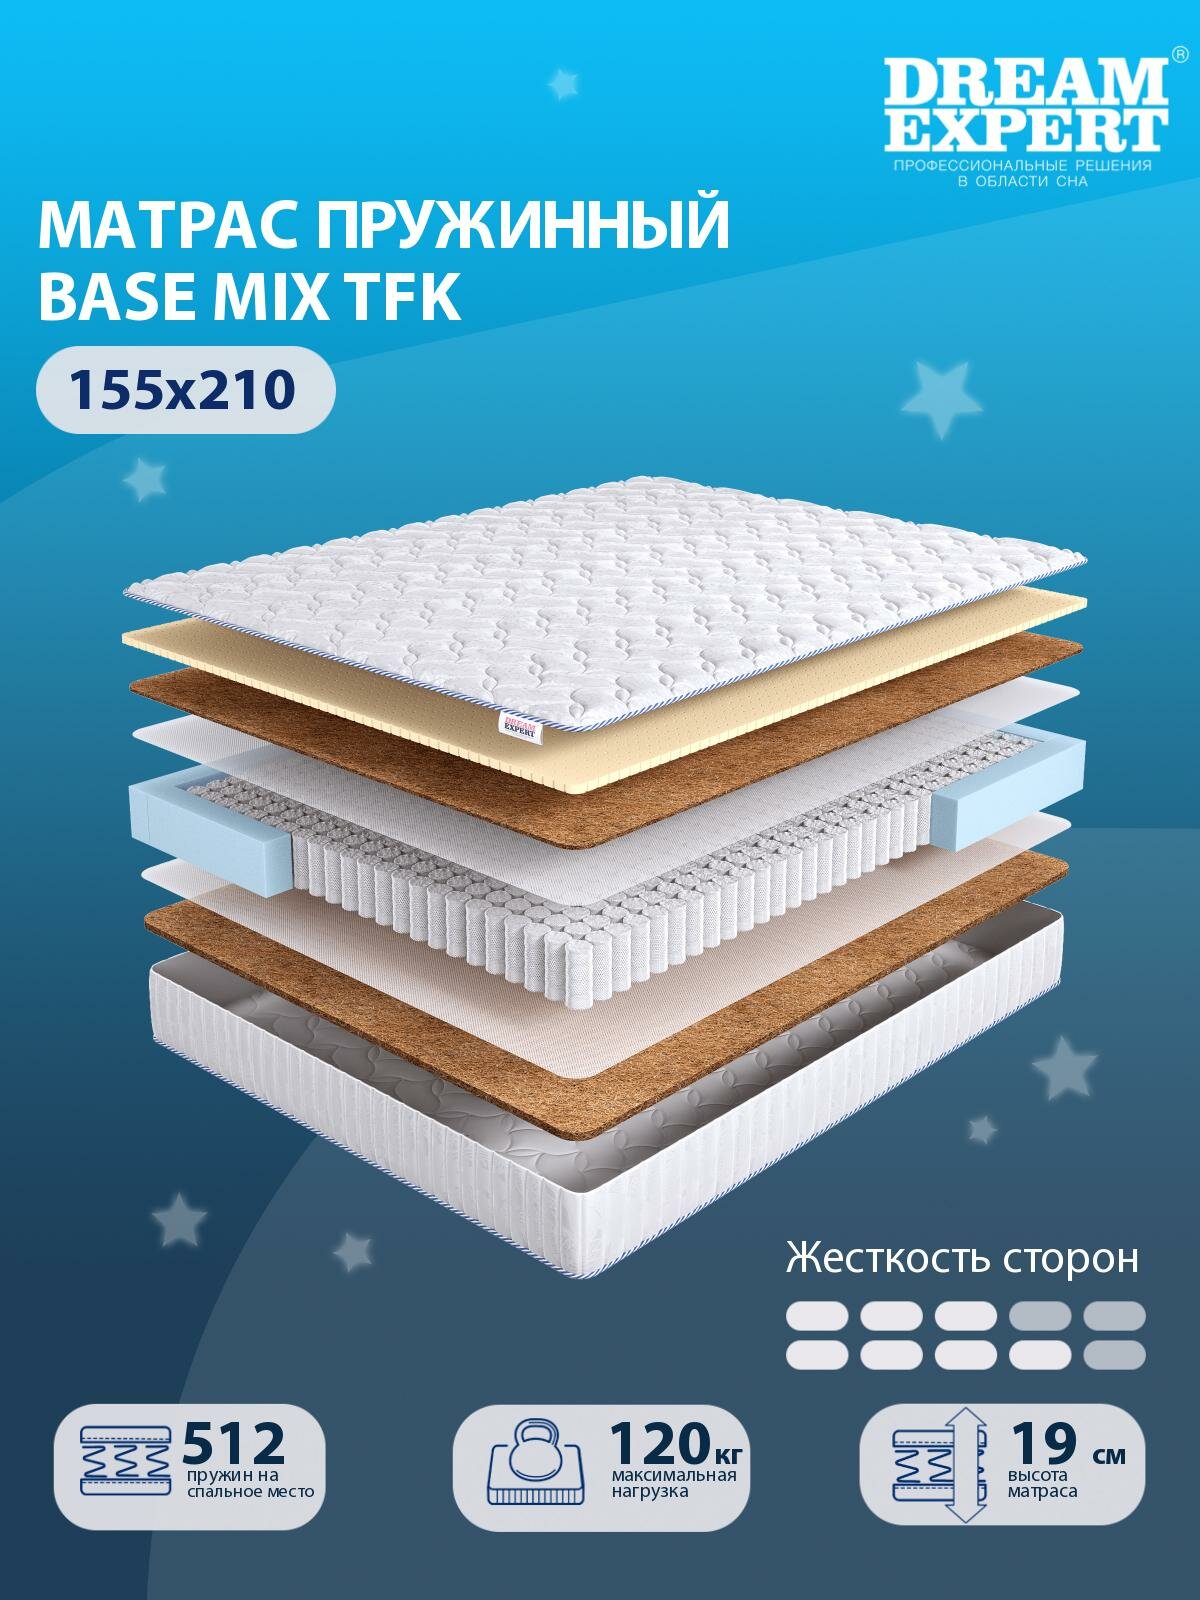 Матрас DreamExpert Base Mix TFK средней и выше средней жесткости, двуспальный, независимый пружинный блок, на кровать 155x210